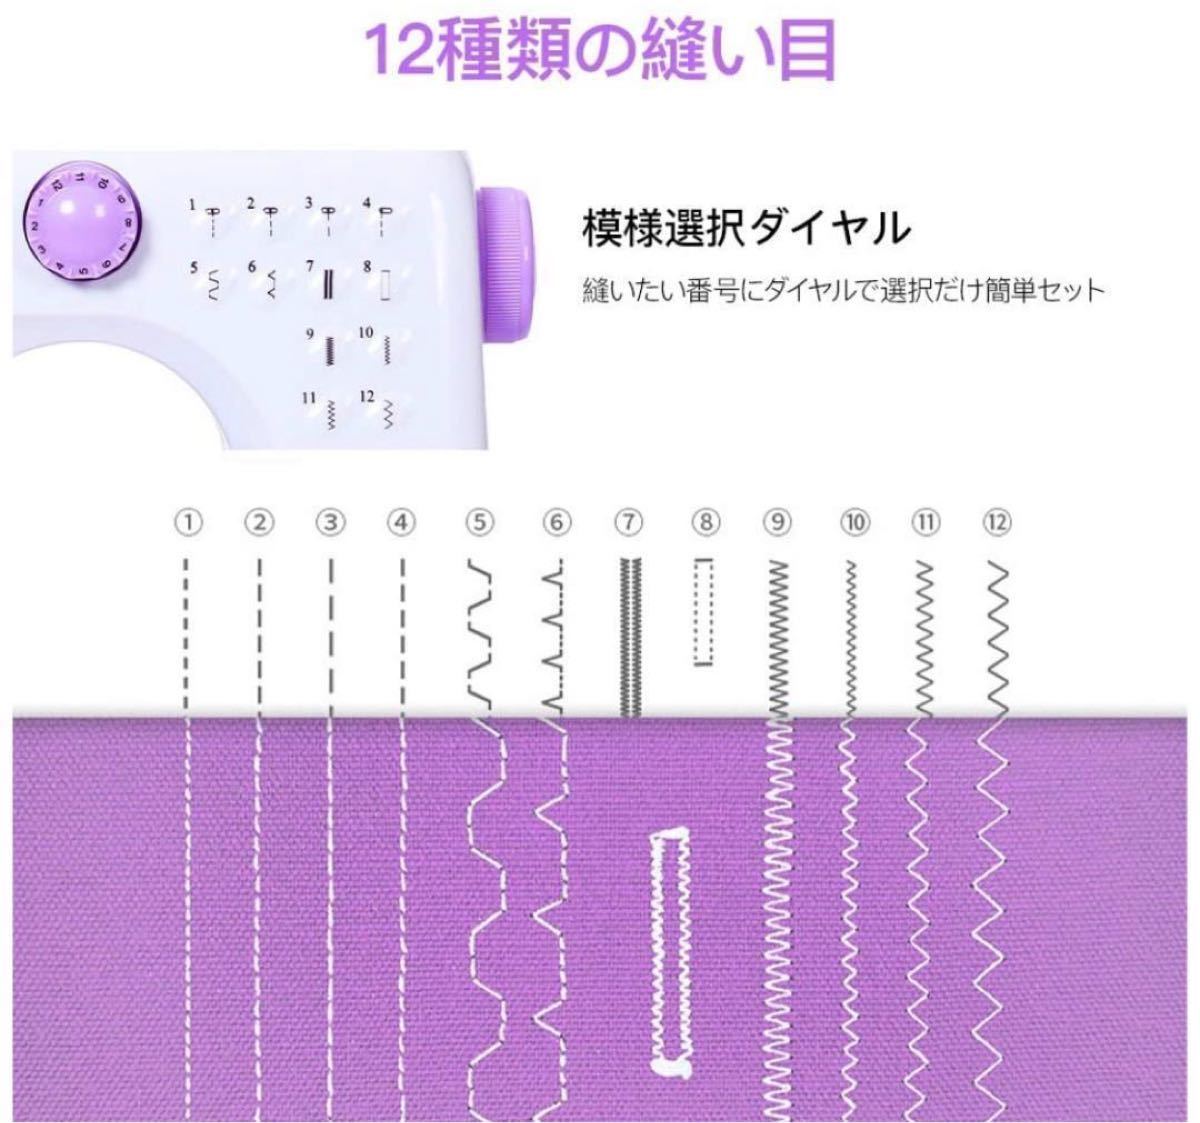 【新品未使用】電動ミシン 家庭用ミシン 小型ミシン ライト付き 12種類の縫い